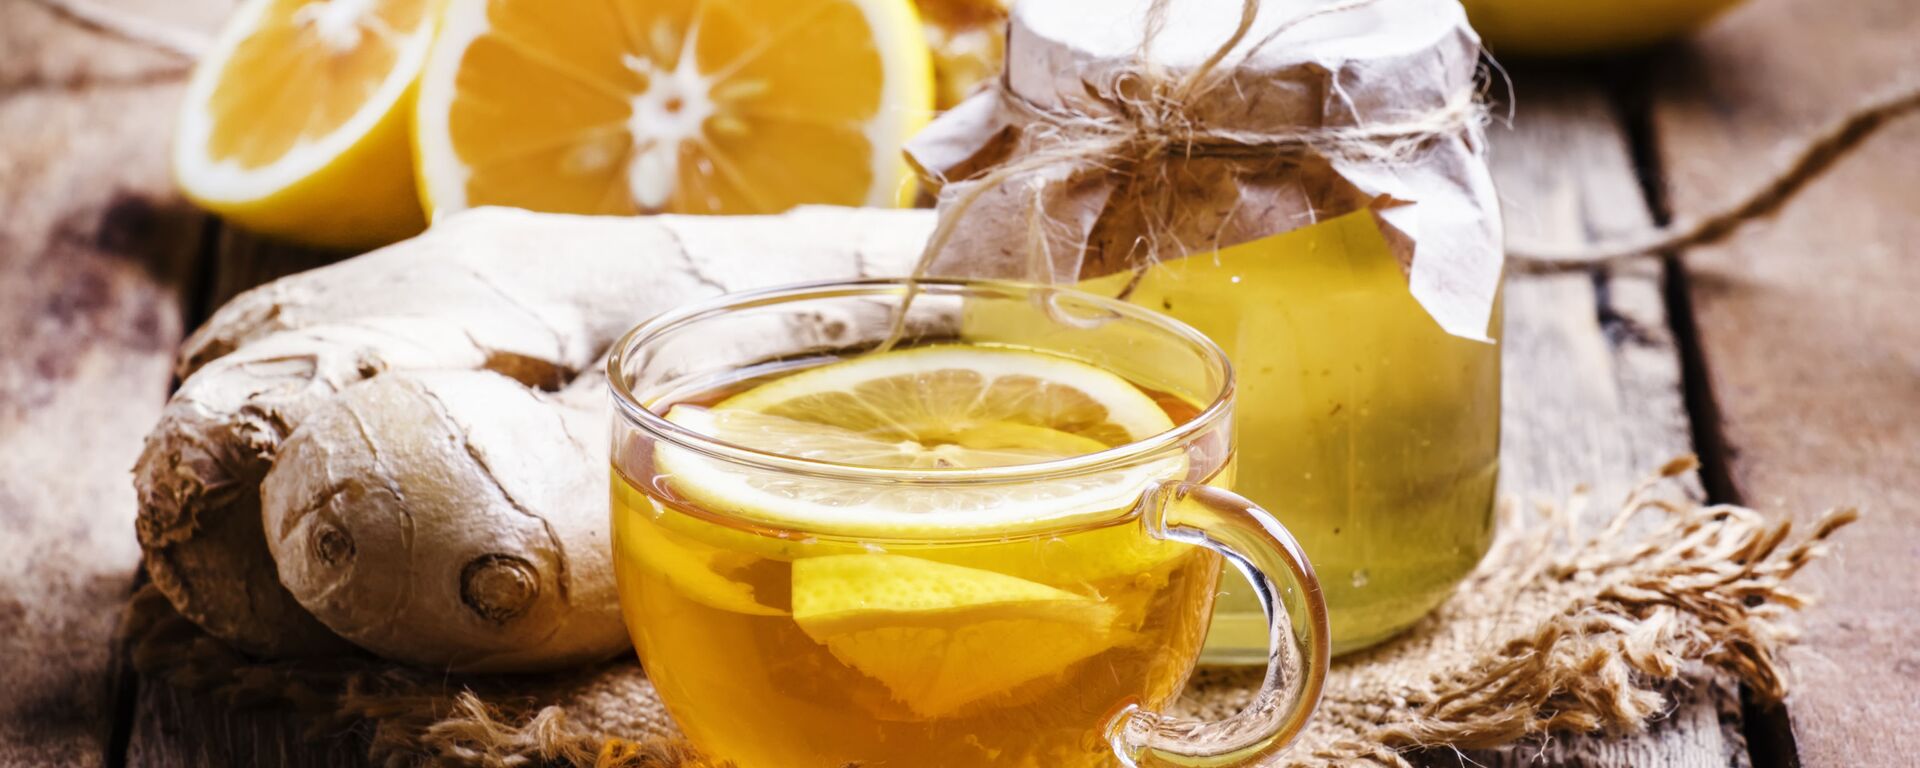 الشاي الأسود مع الليمون والعسل - سبوتنيك عربي, 1920, 08.02.2021